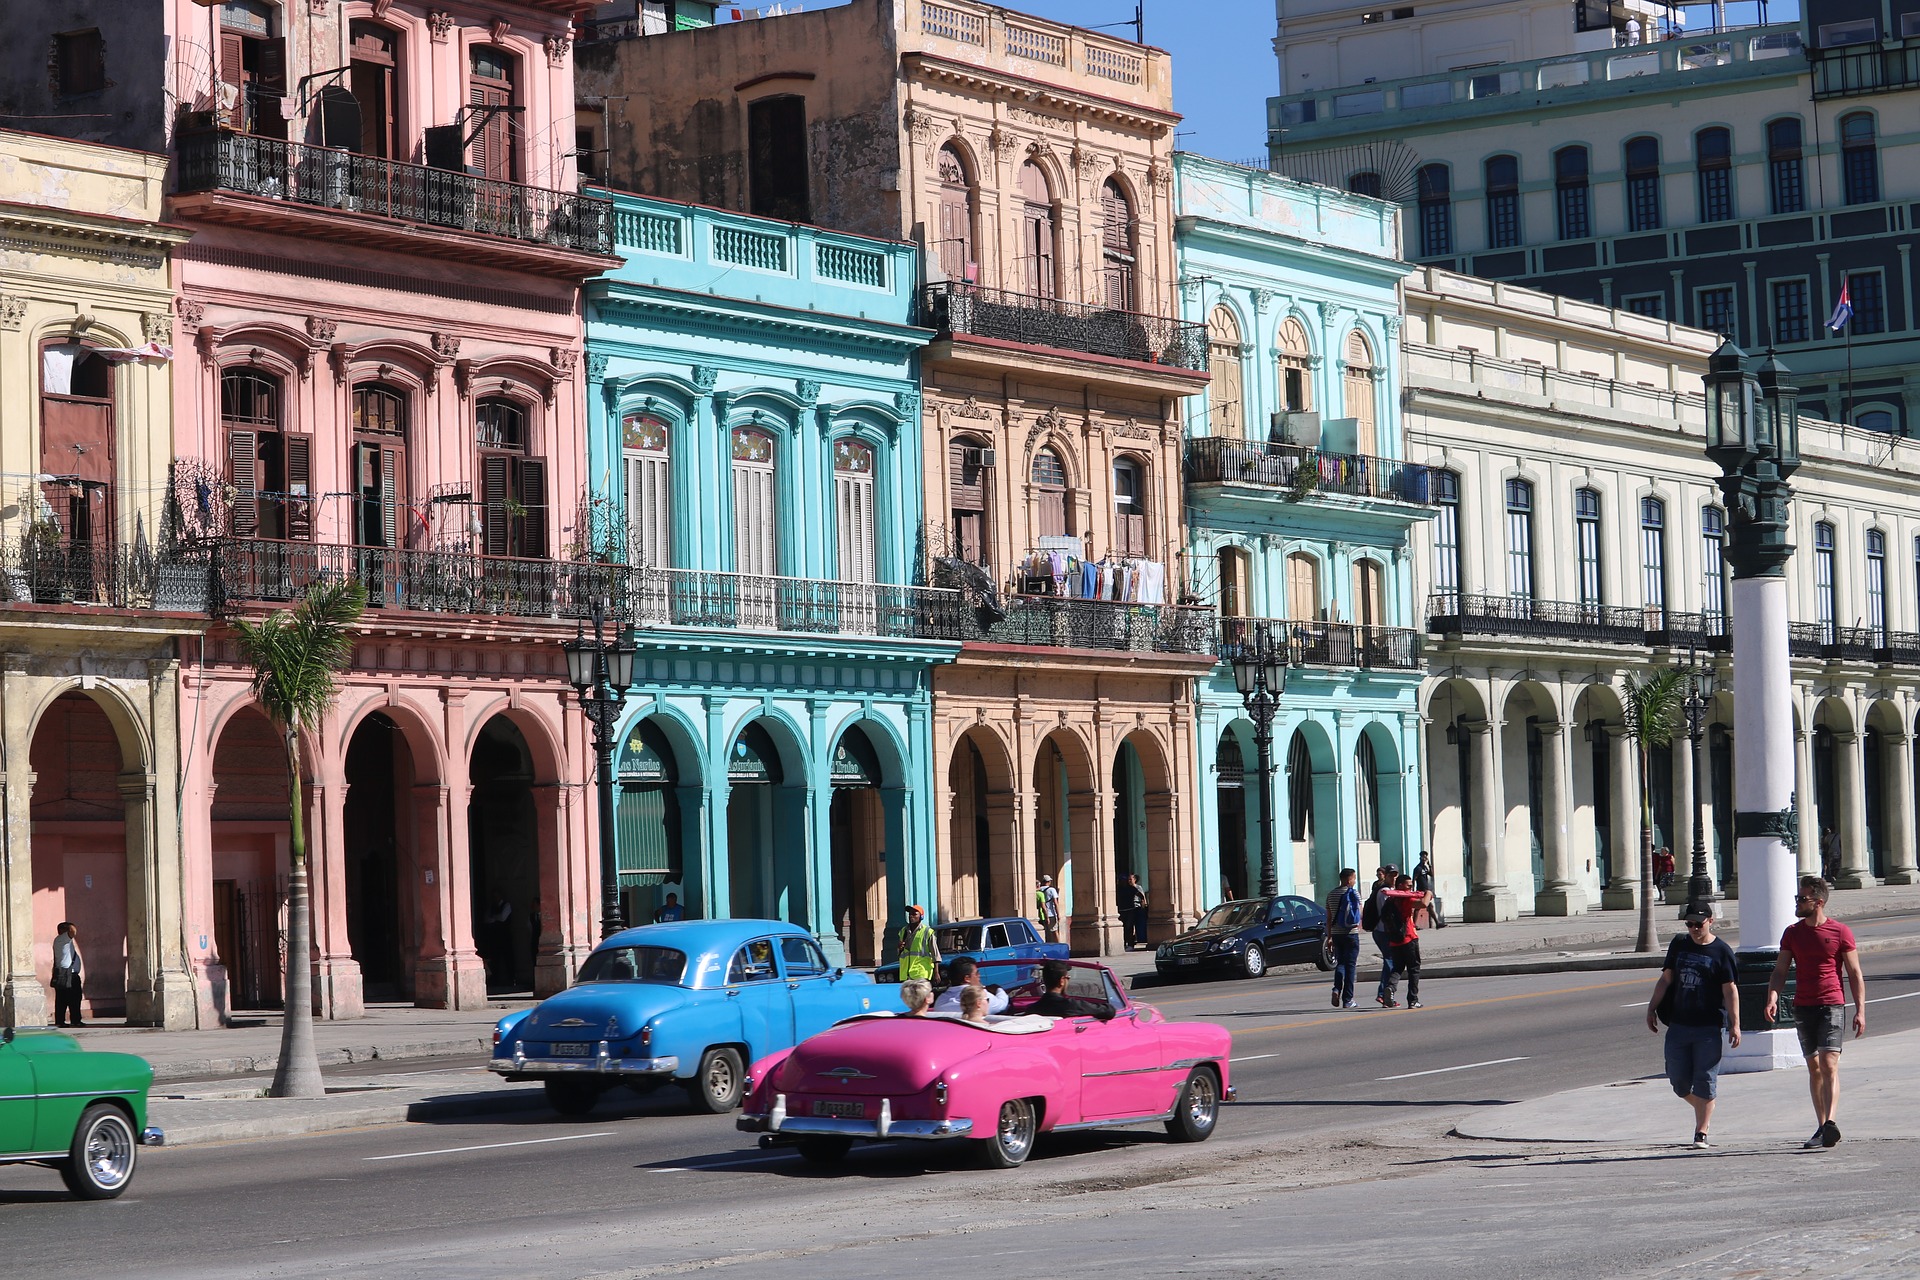 A view of a street in Havana, Cuba.